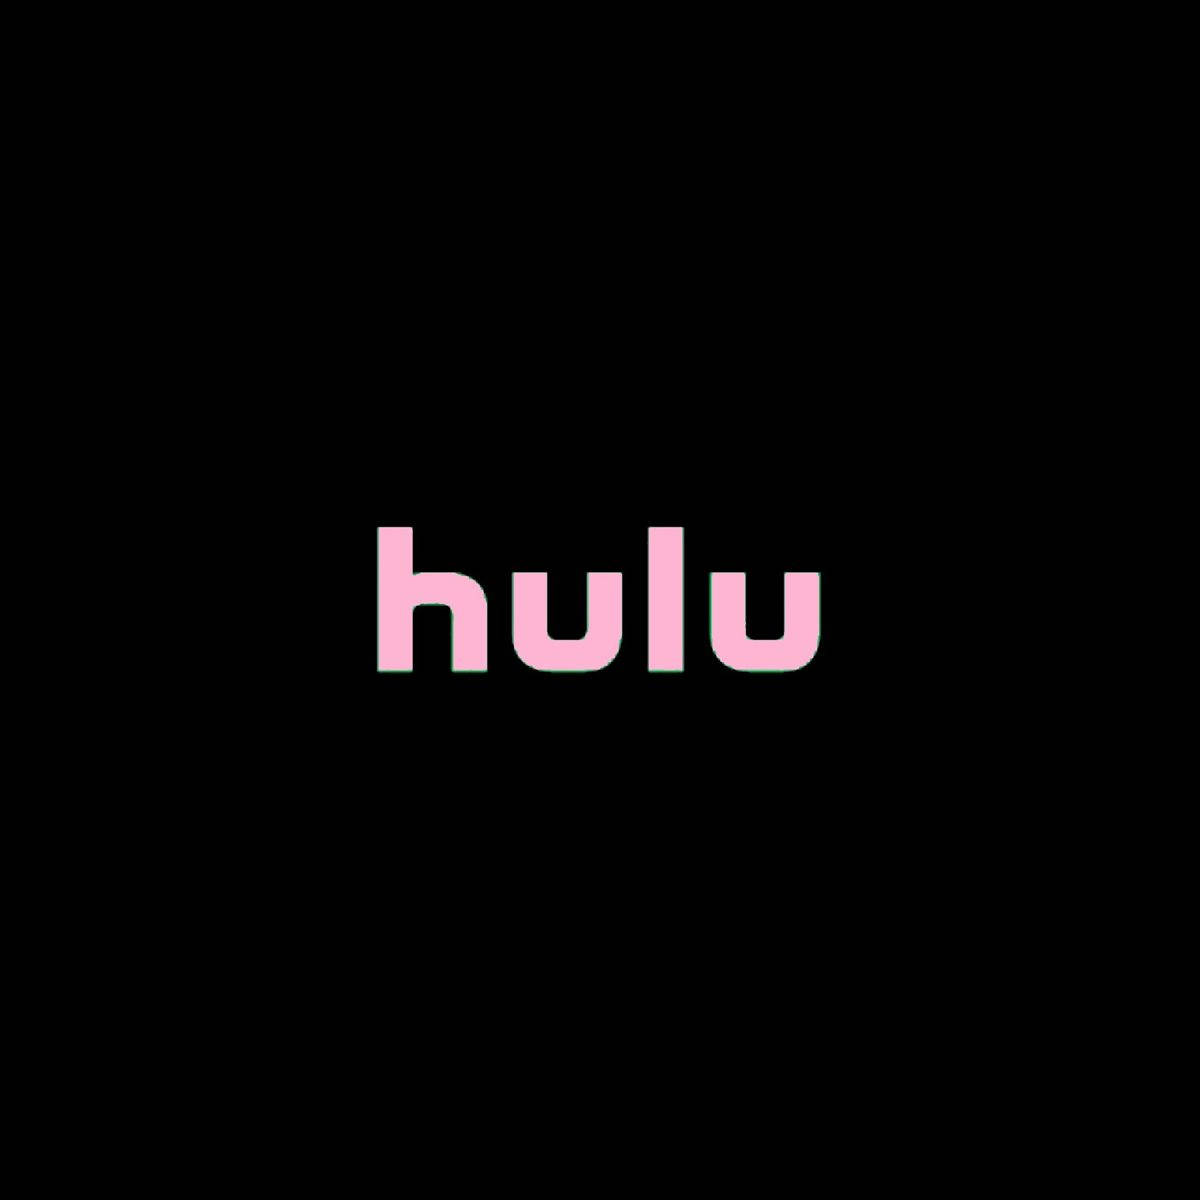 Hulu Pink Logo Wallpaper